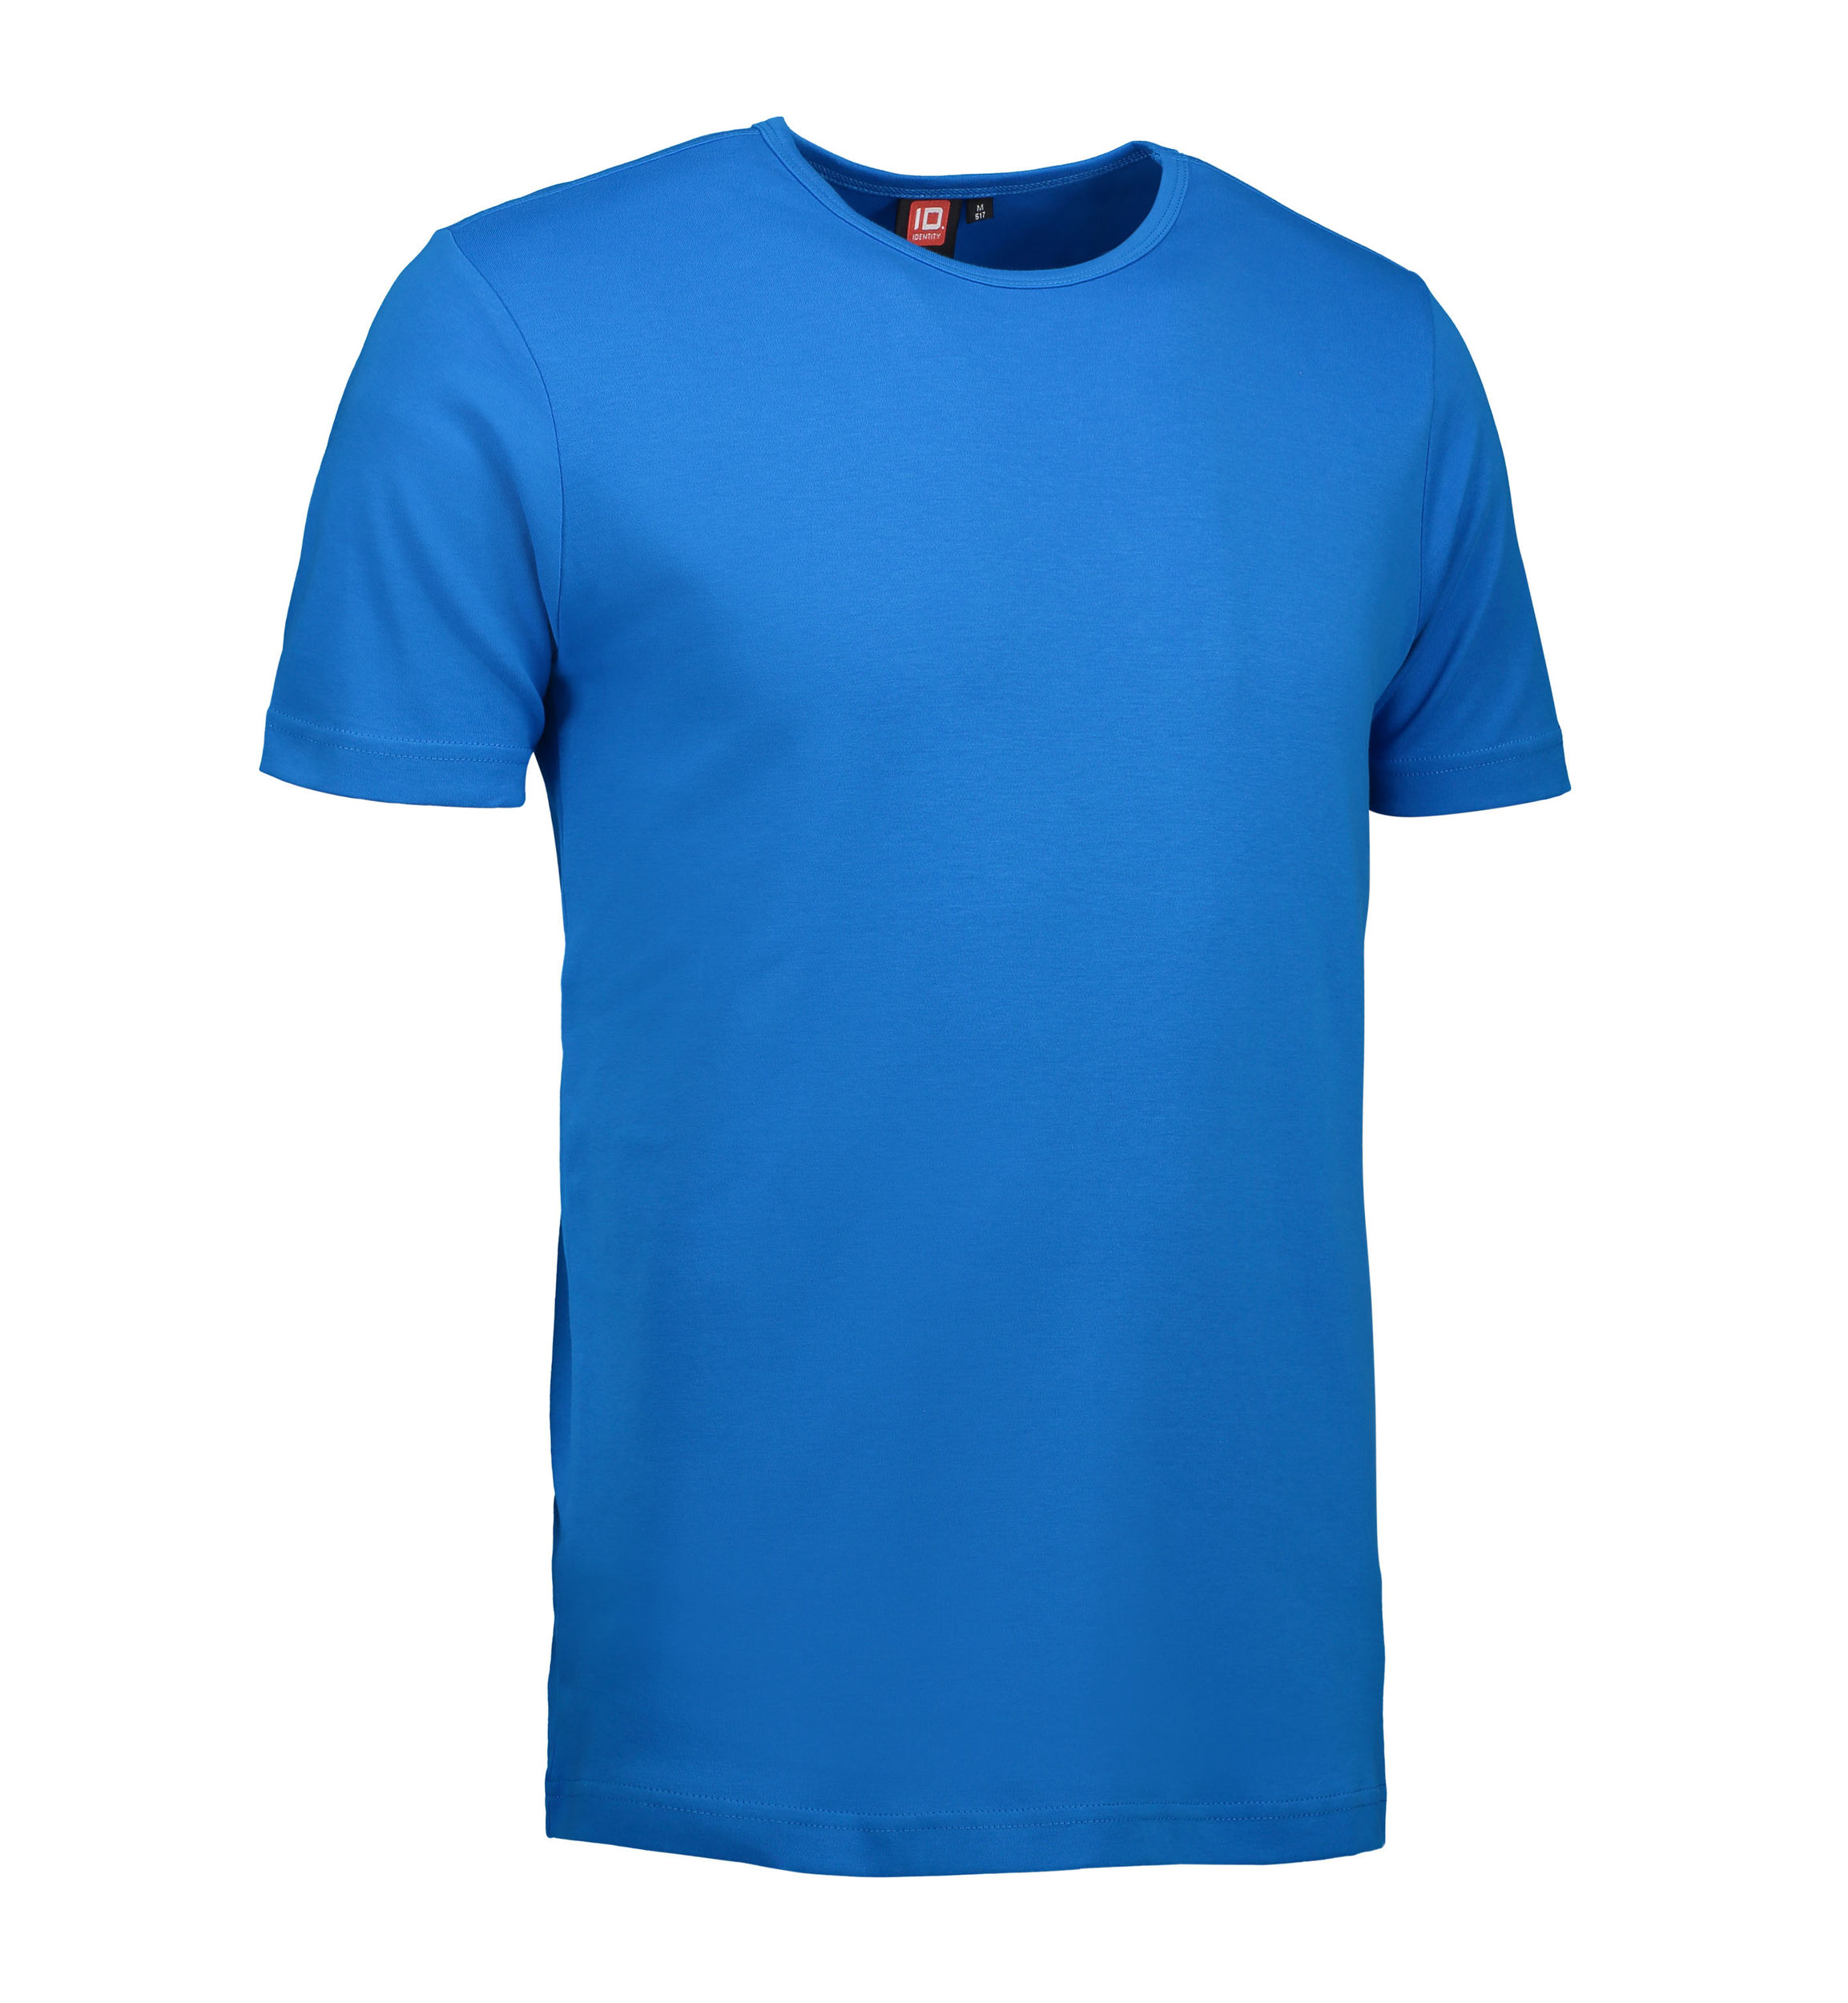 Billede af Turkis t-shirt med rund hals til mænd - XL hos Sygeplejebutikken.dk